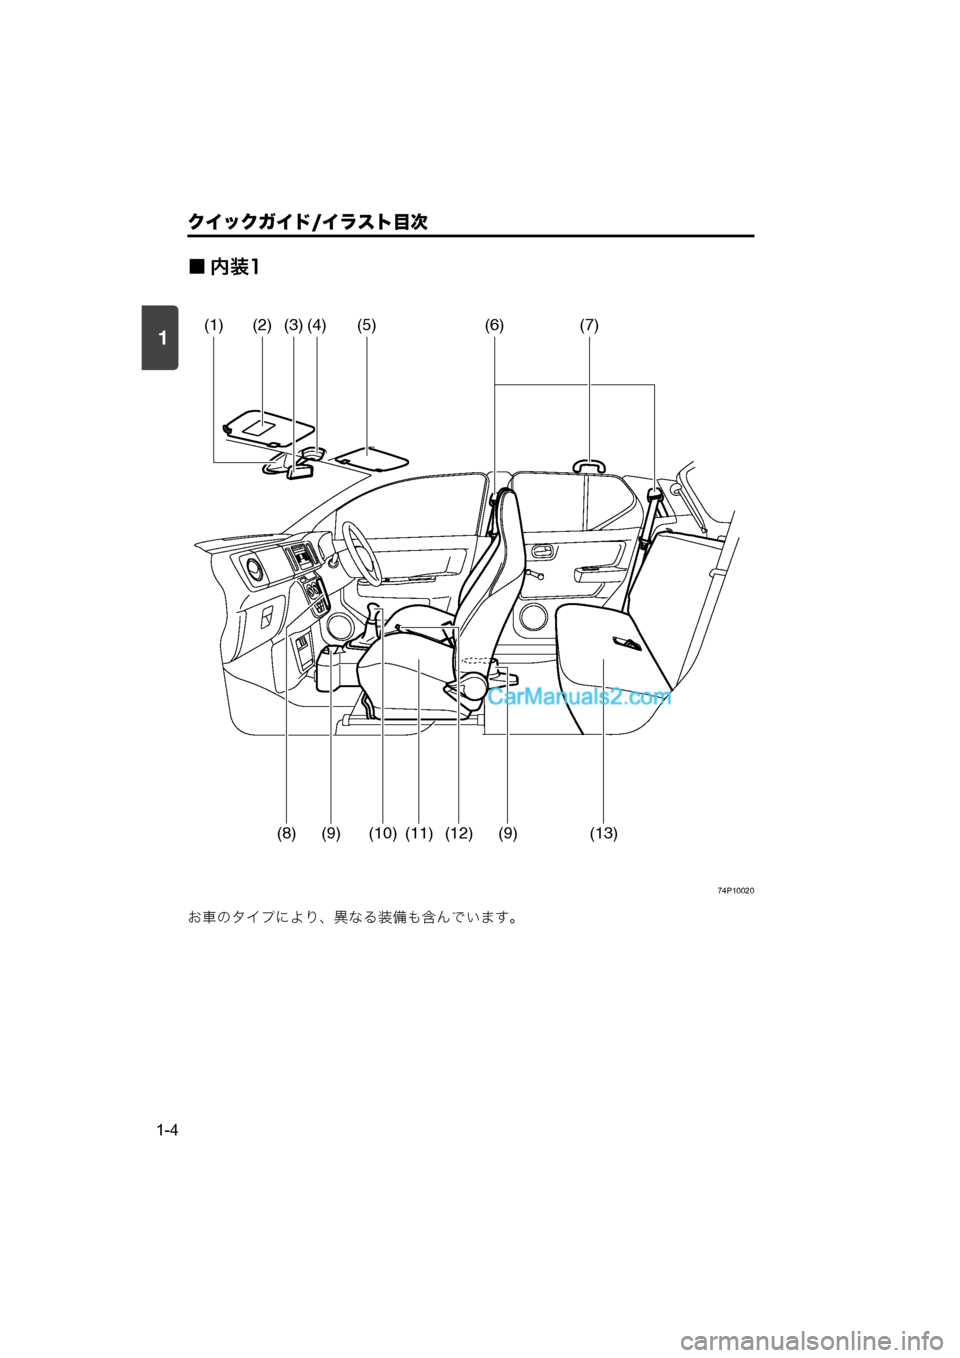 MAZDA MODEL CARROL 2015  取扱説明書 (キャロル) (in Japanese) 1
クイックガイド/イラスト目次
1-4
■内装1
74P10020
お車のタイプにより、異なる装備も含んでいます。
(2)(3)(4)(5)(7)(6)
(8)(9)
(1)
(9)(12)(11)(13)(10)
000.book  4 �